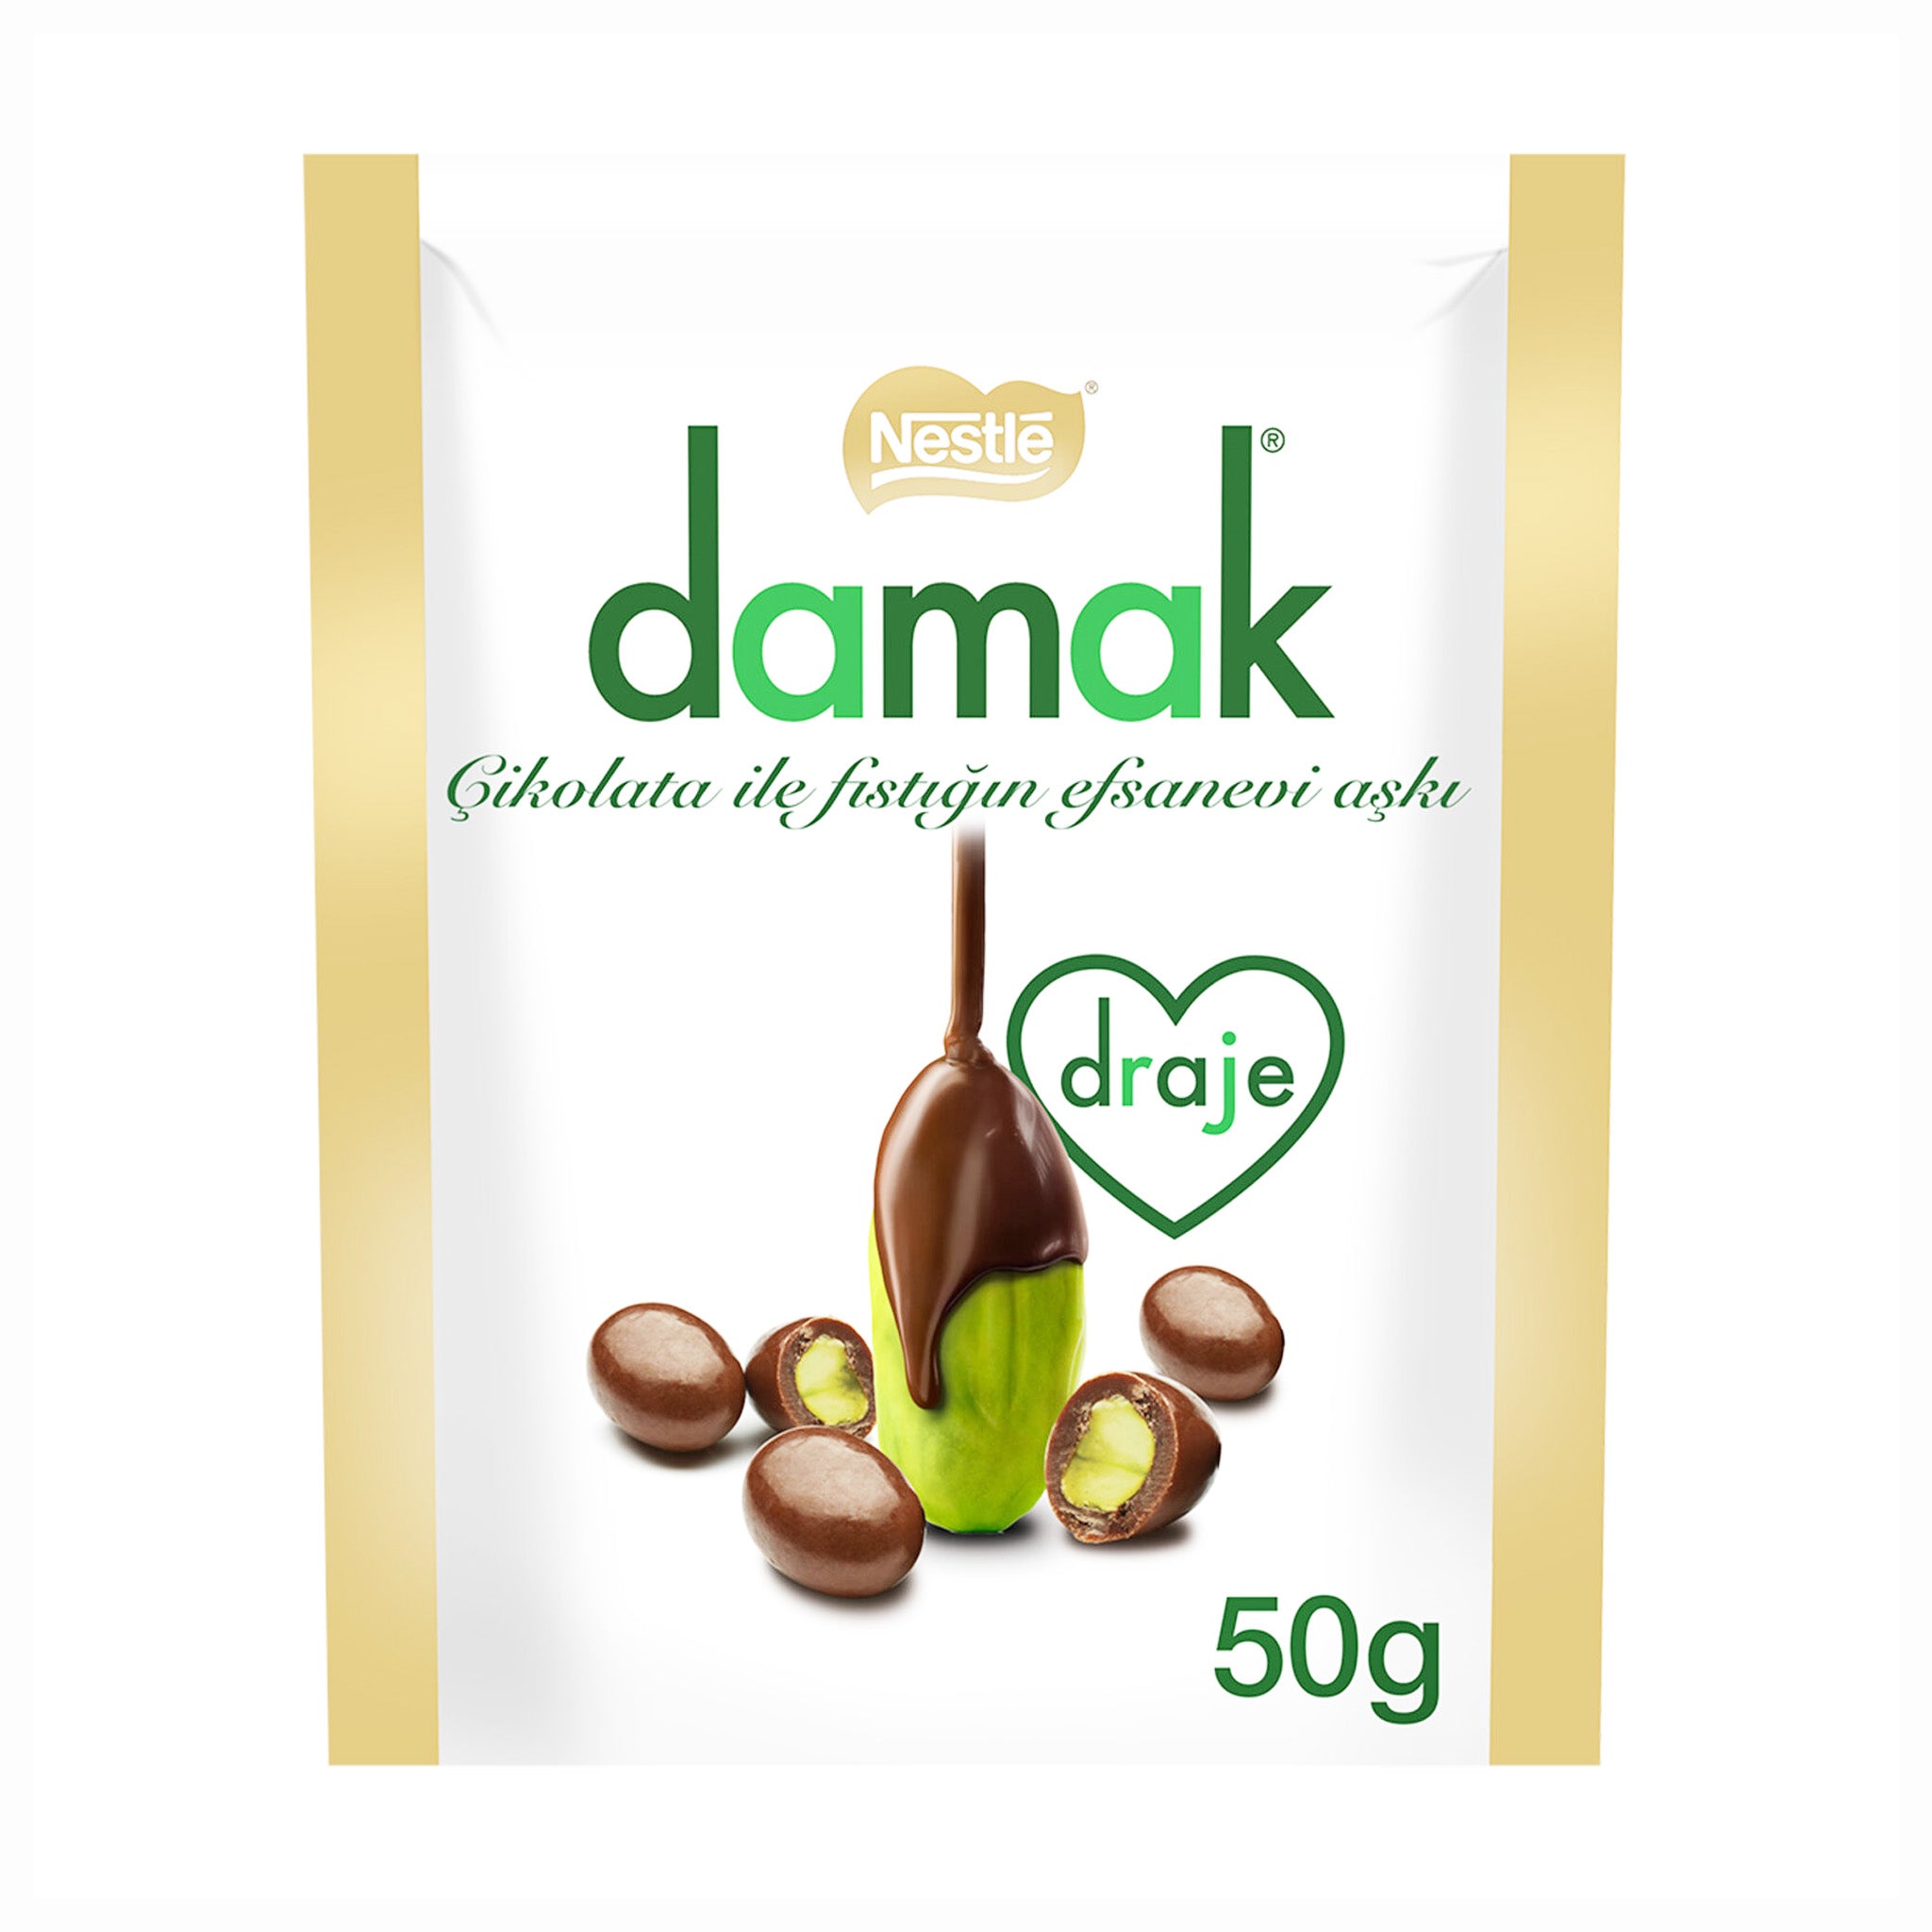 Nestle Damak draje דרז'ה מצופה שוקולד חלב נסטלה